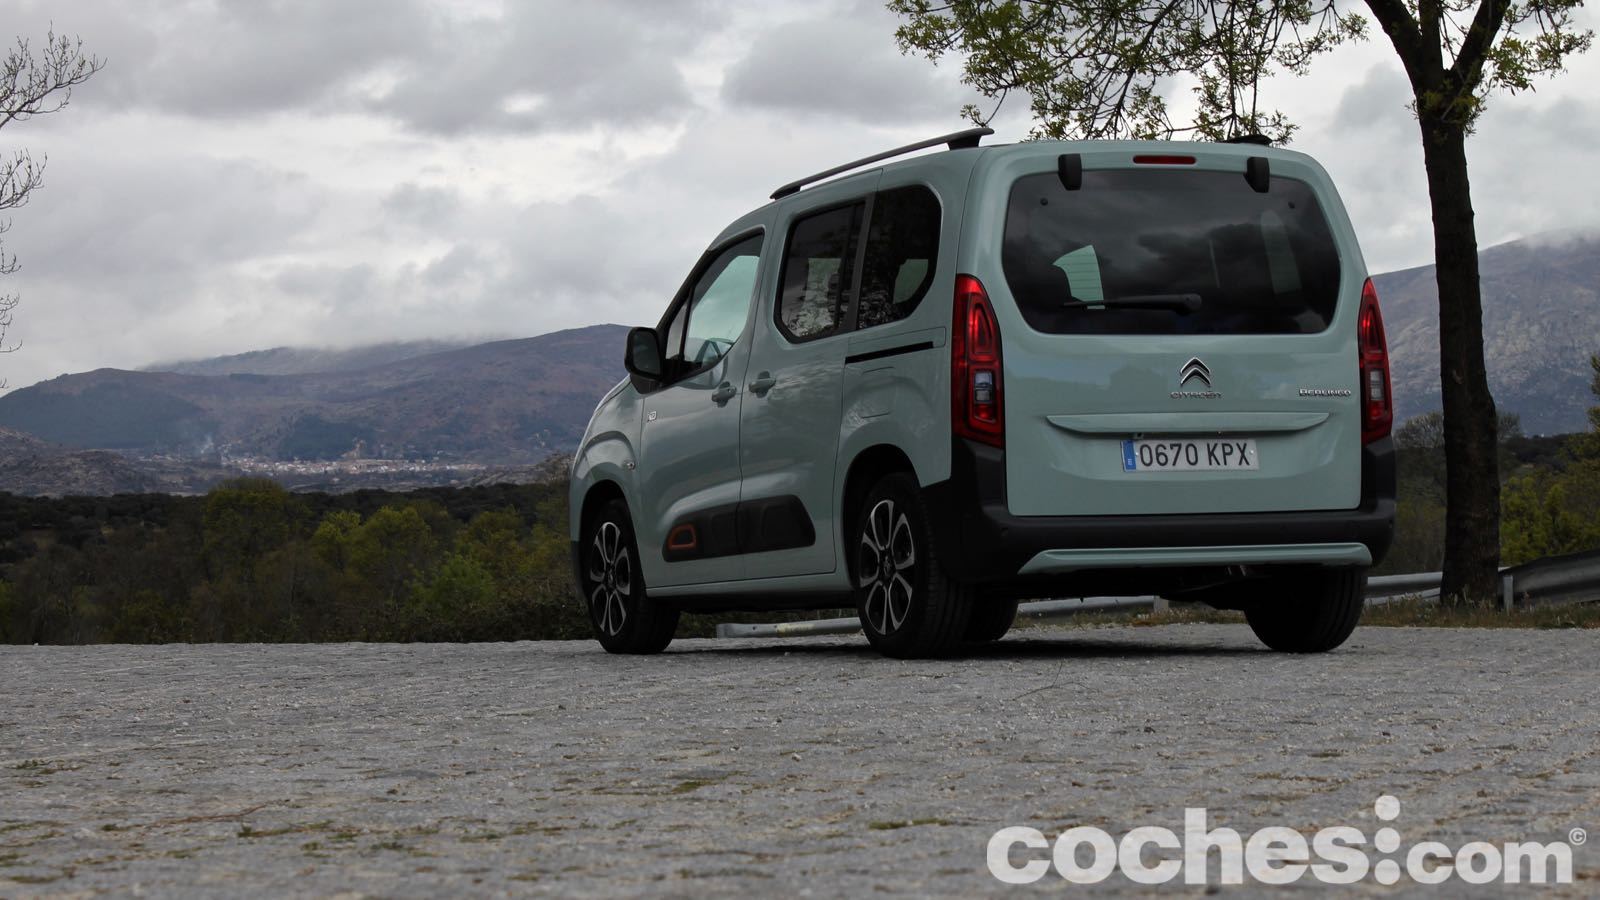 Probamos el Citroën Berlingo de 130 CV gasolina. ¿Cómo se comporta?